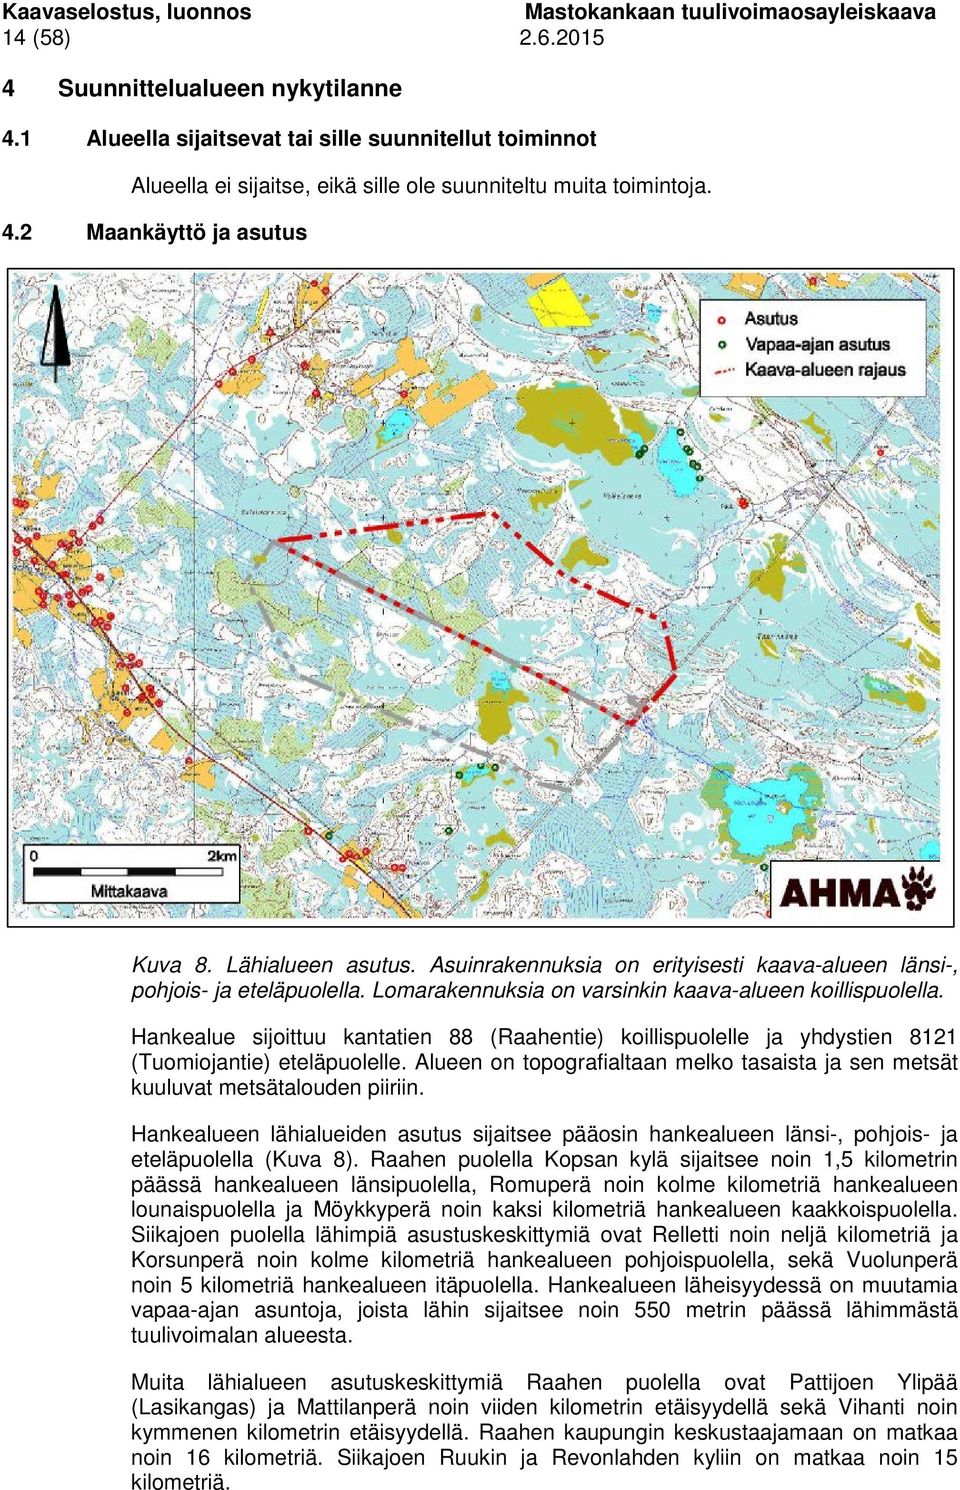 Hankealue sijoittuu kantatien 88 (Raahentie) koillispuolelle ja yhdystien 8121 (Tuomiojantie) eteläpuolelle. Alueen on topografialtaan melko tasaista ja sen metsät kuuluvat metsätalouden piiriin.